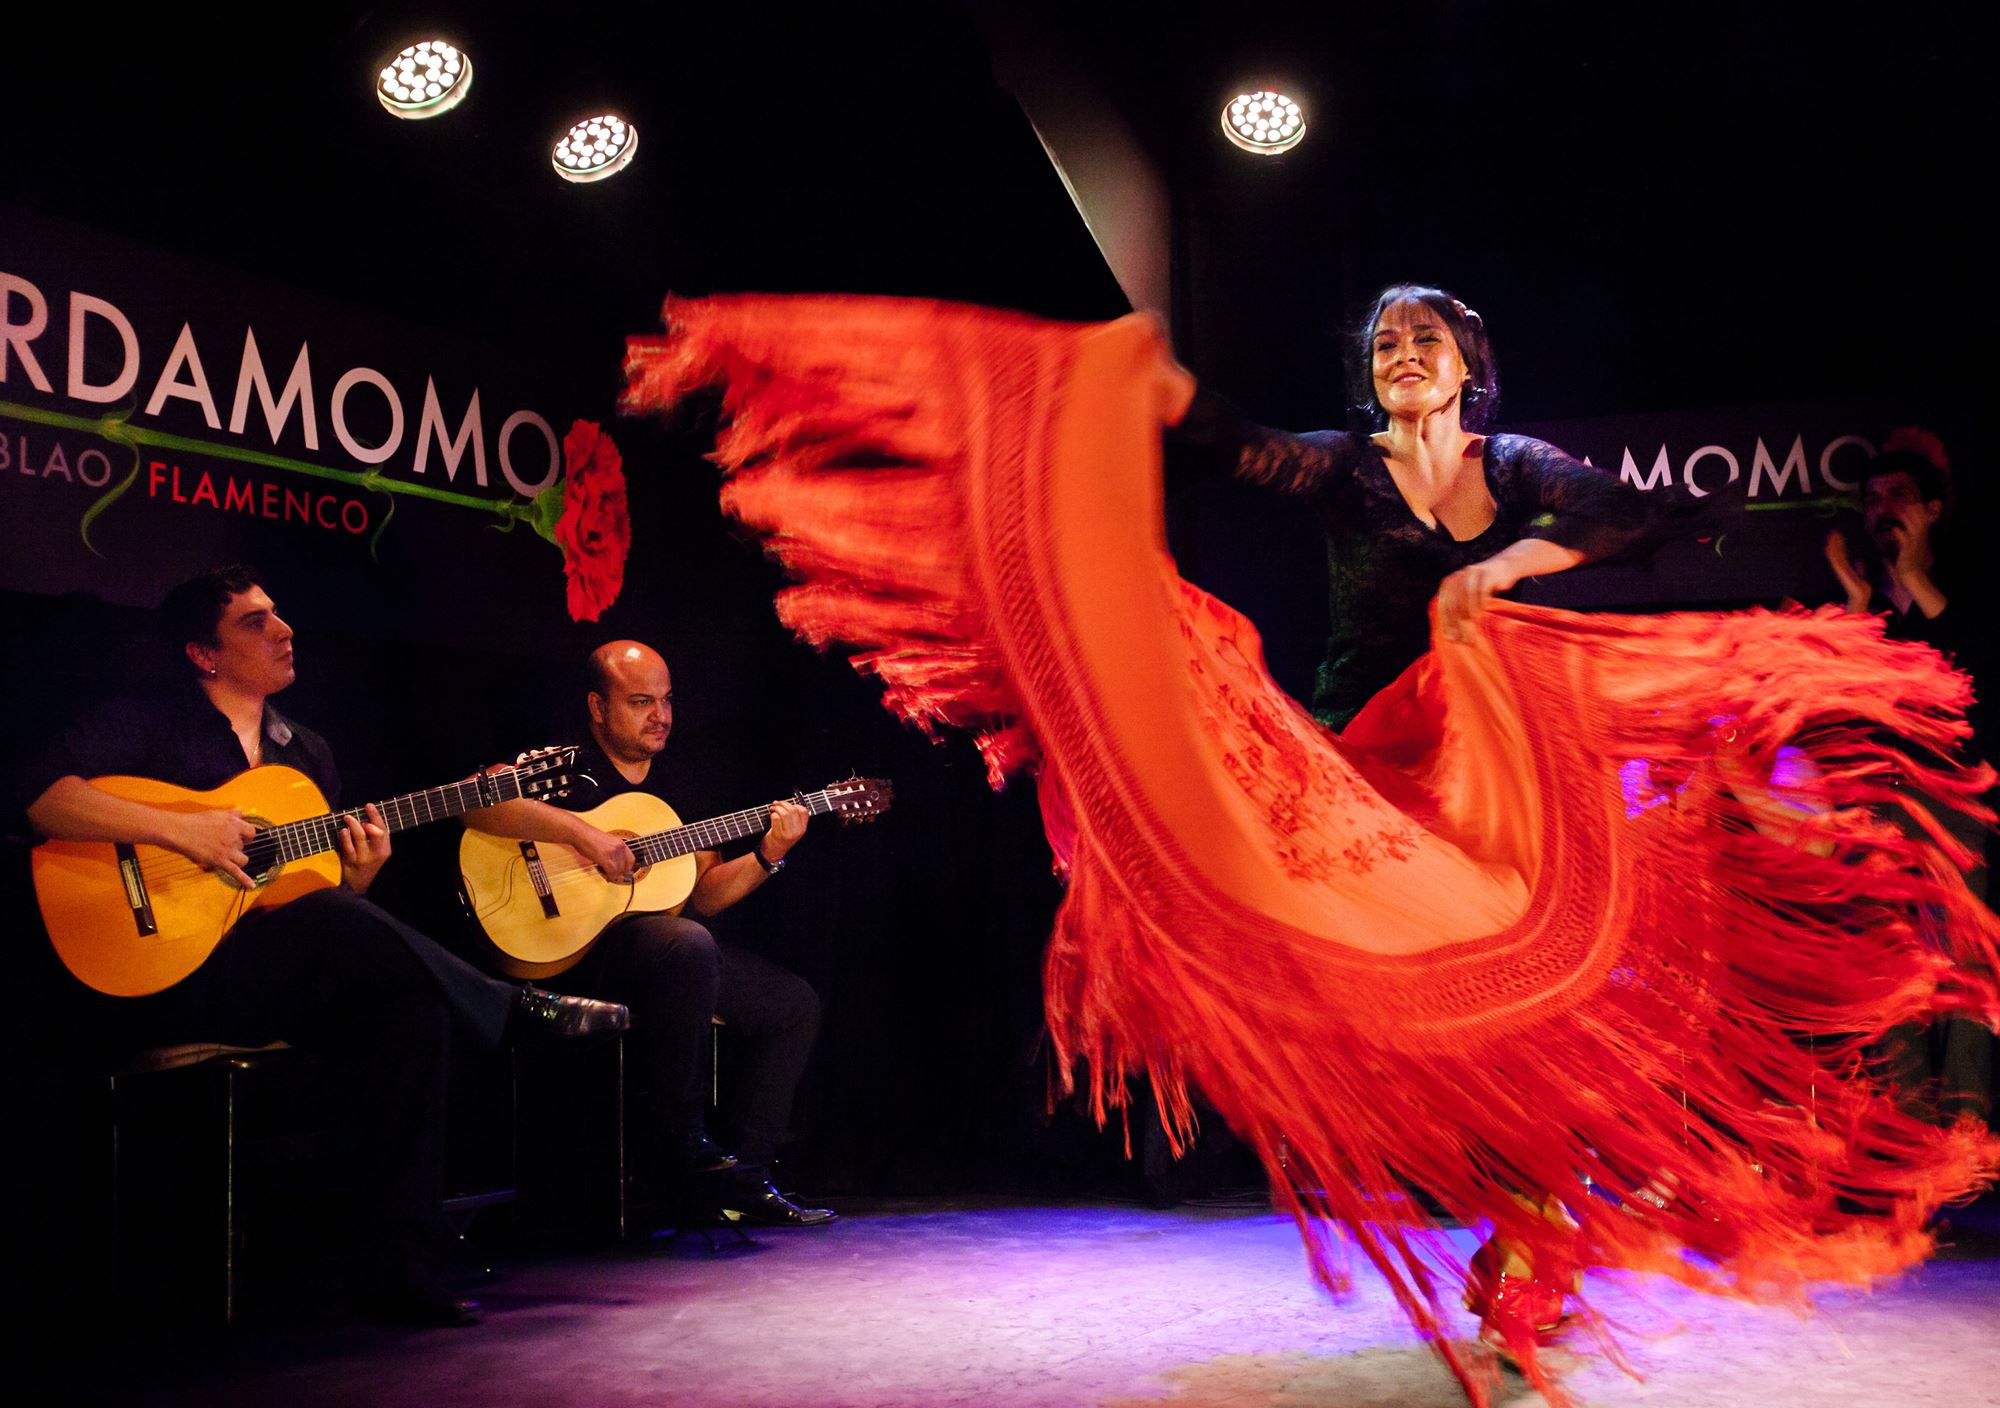 réservations réserver Spectacle du flamenco à Cardamomo Tablao billets visiter show madrid tickets